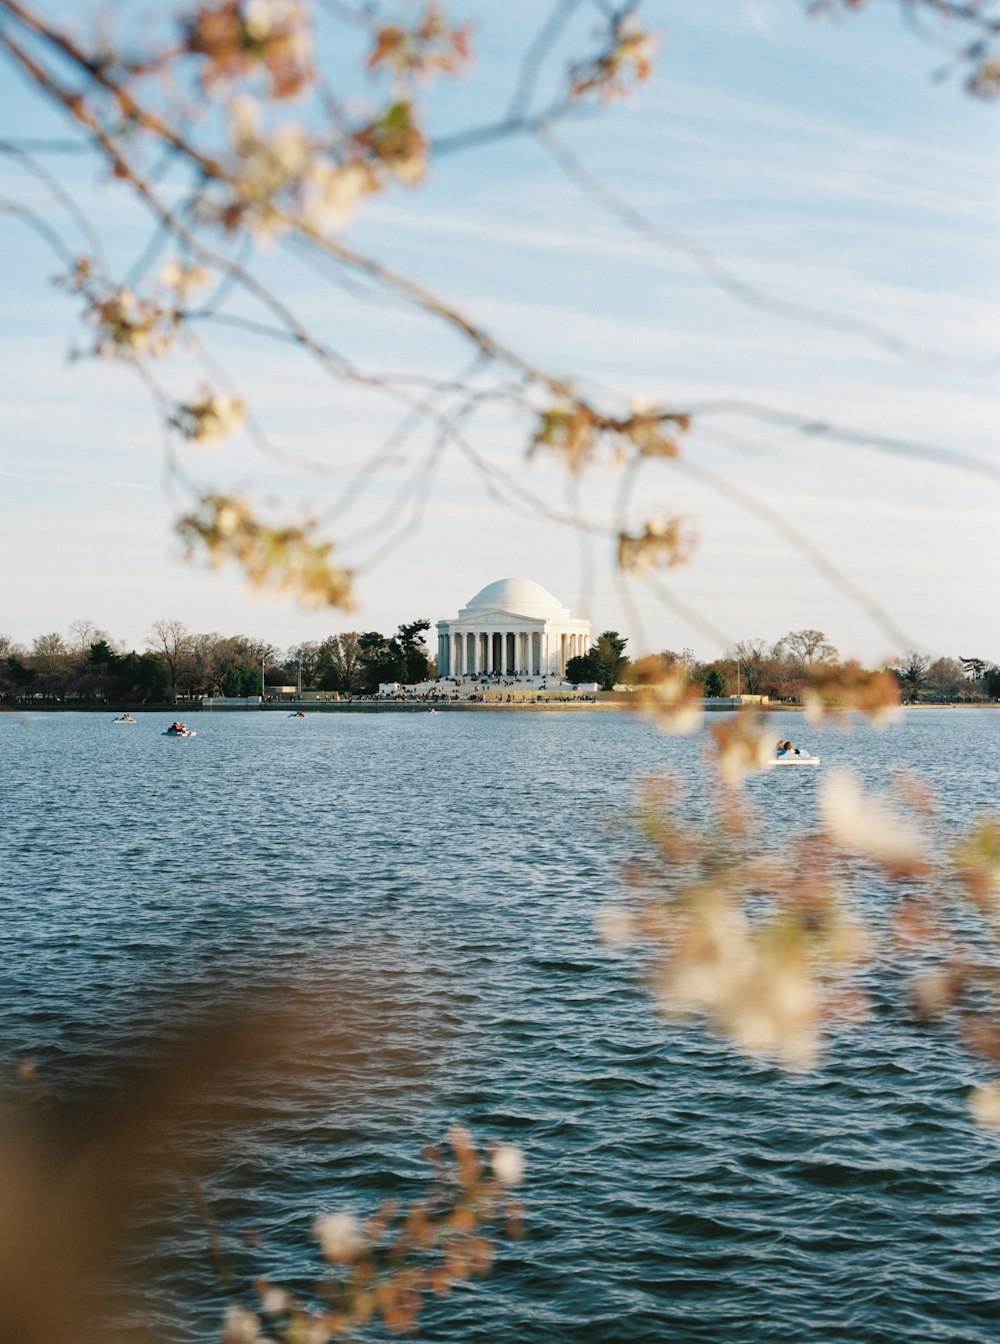 Una veduta del Jefferson Memorial dall'altra parte dell'acqua